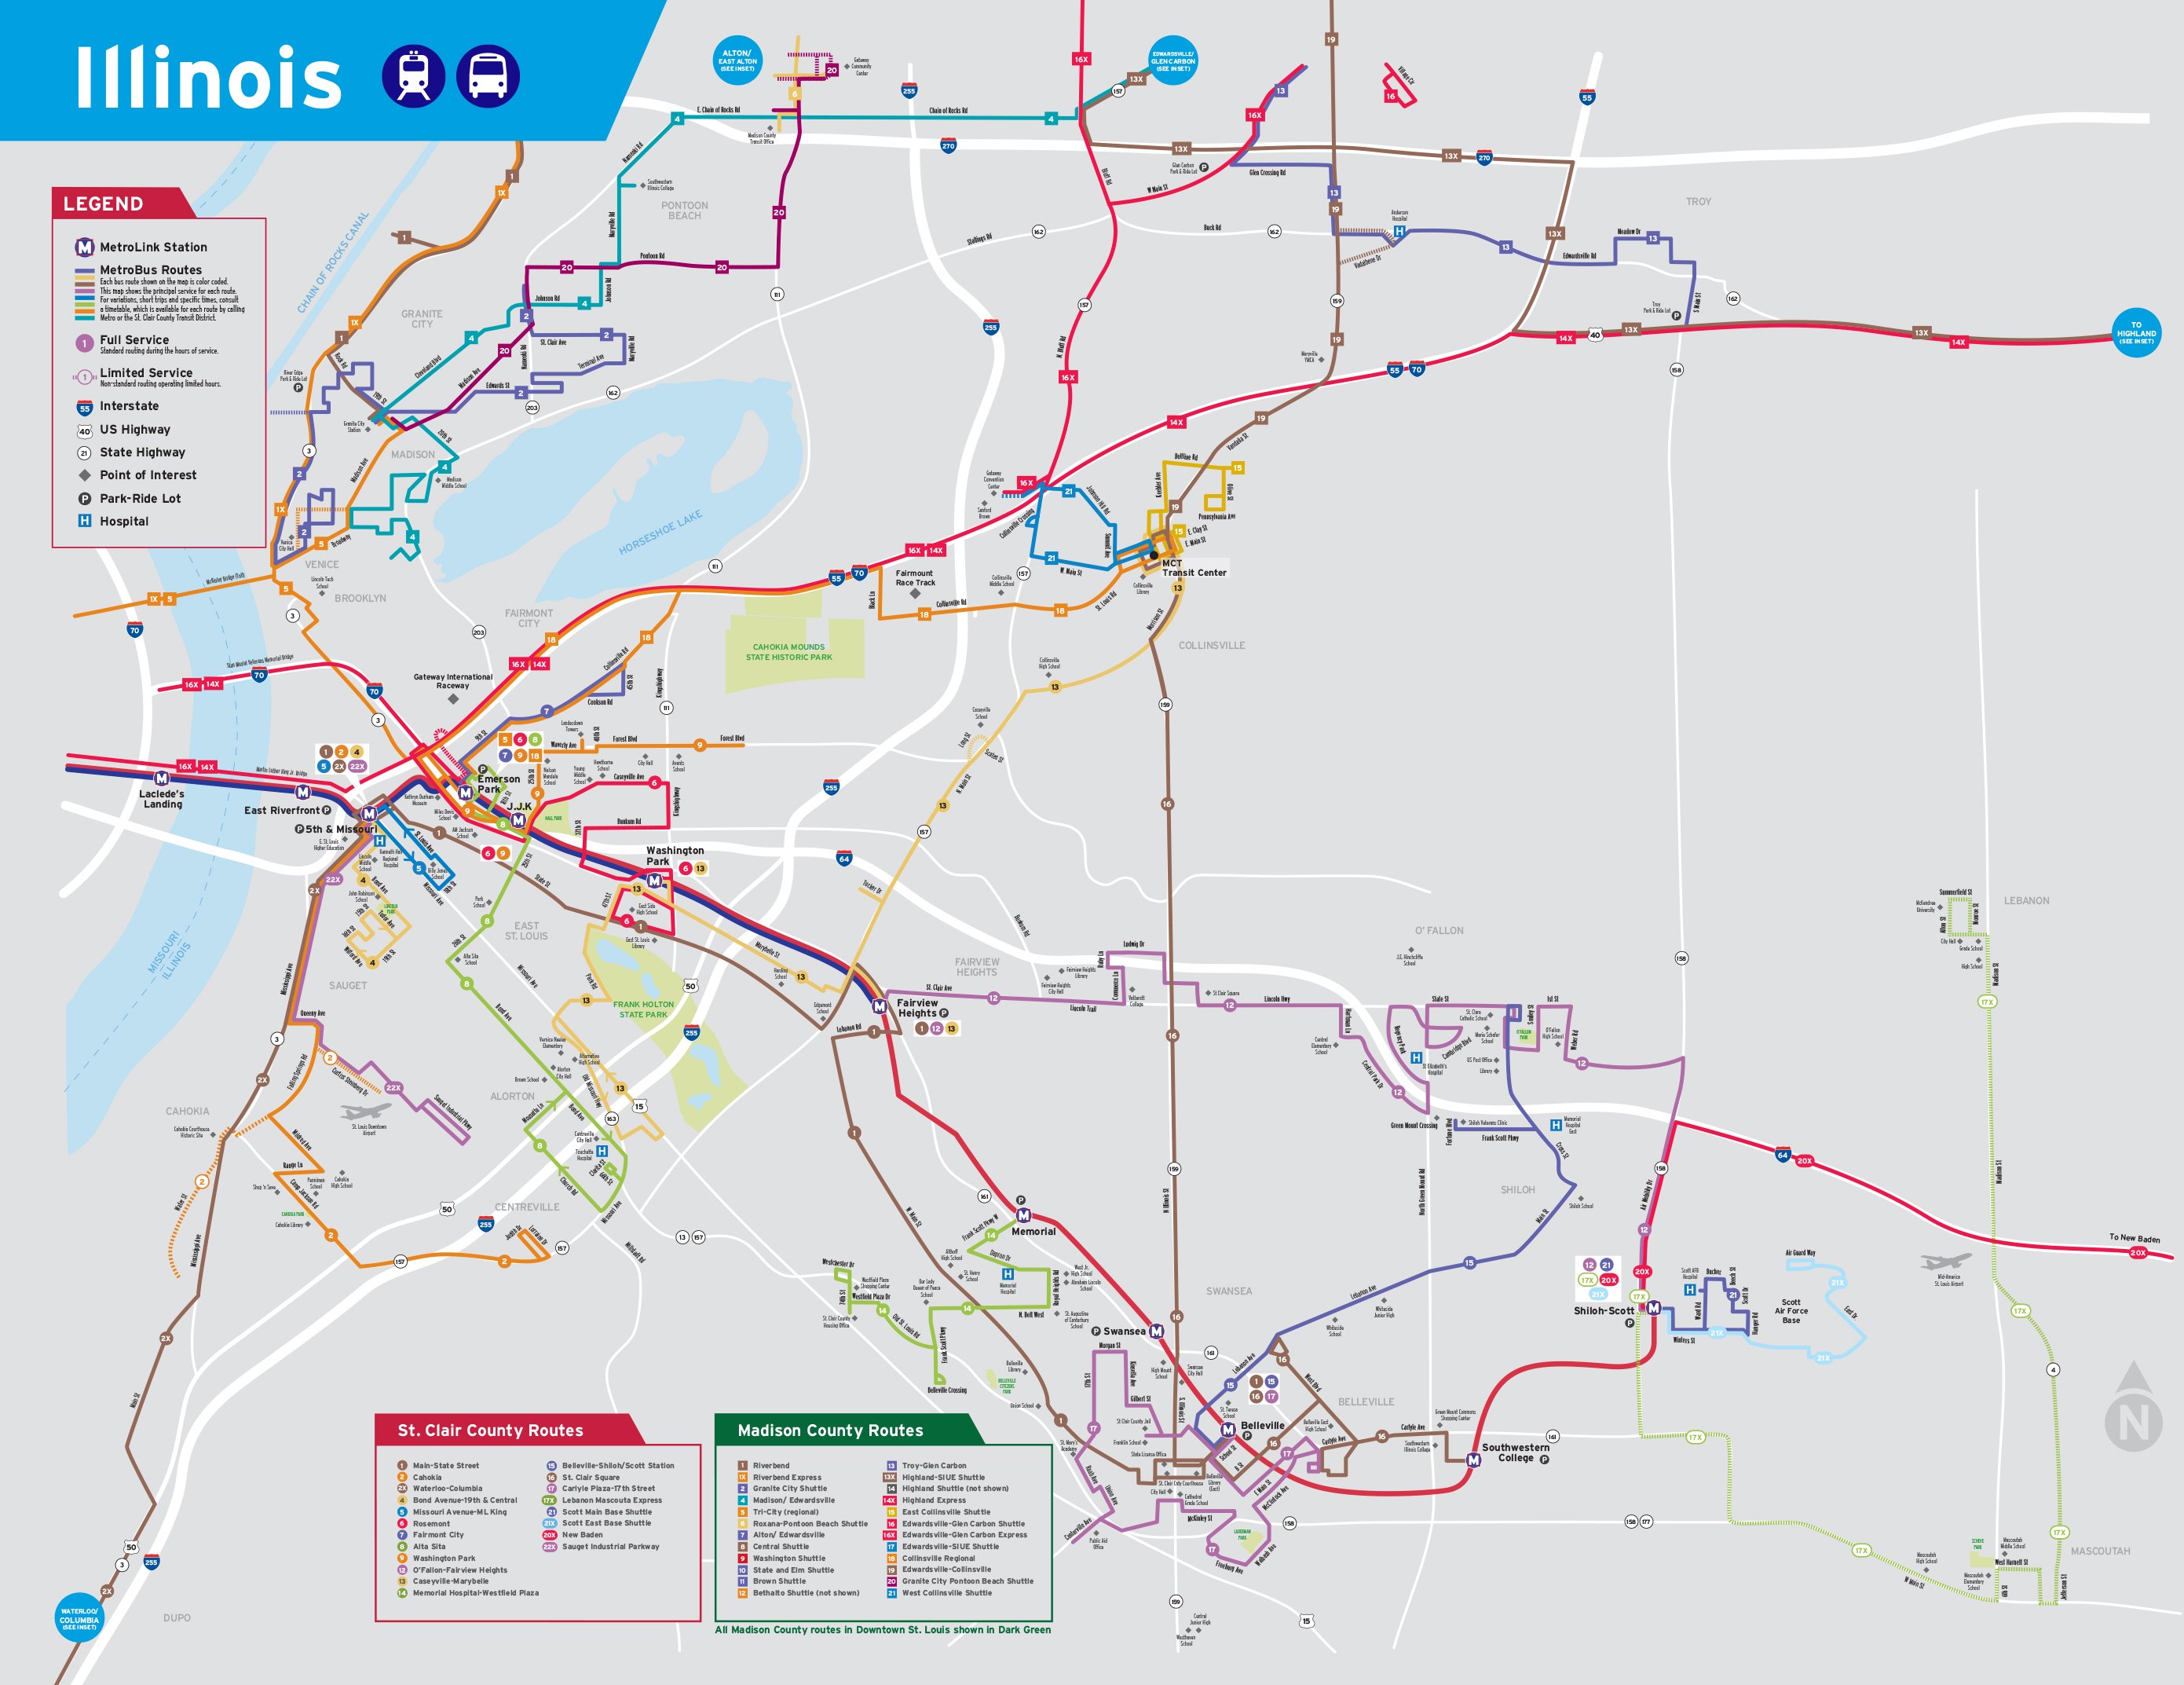 System Maps - www.bagssaleusa.com/louis-vuitton/ Site | Metro Transit – St. Louis